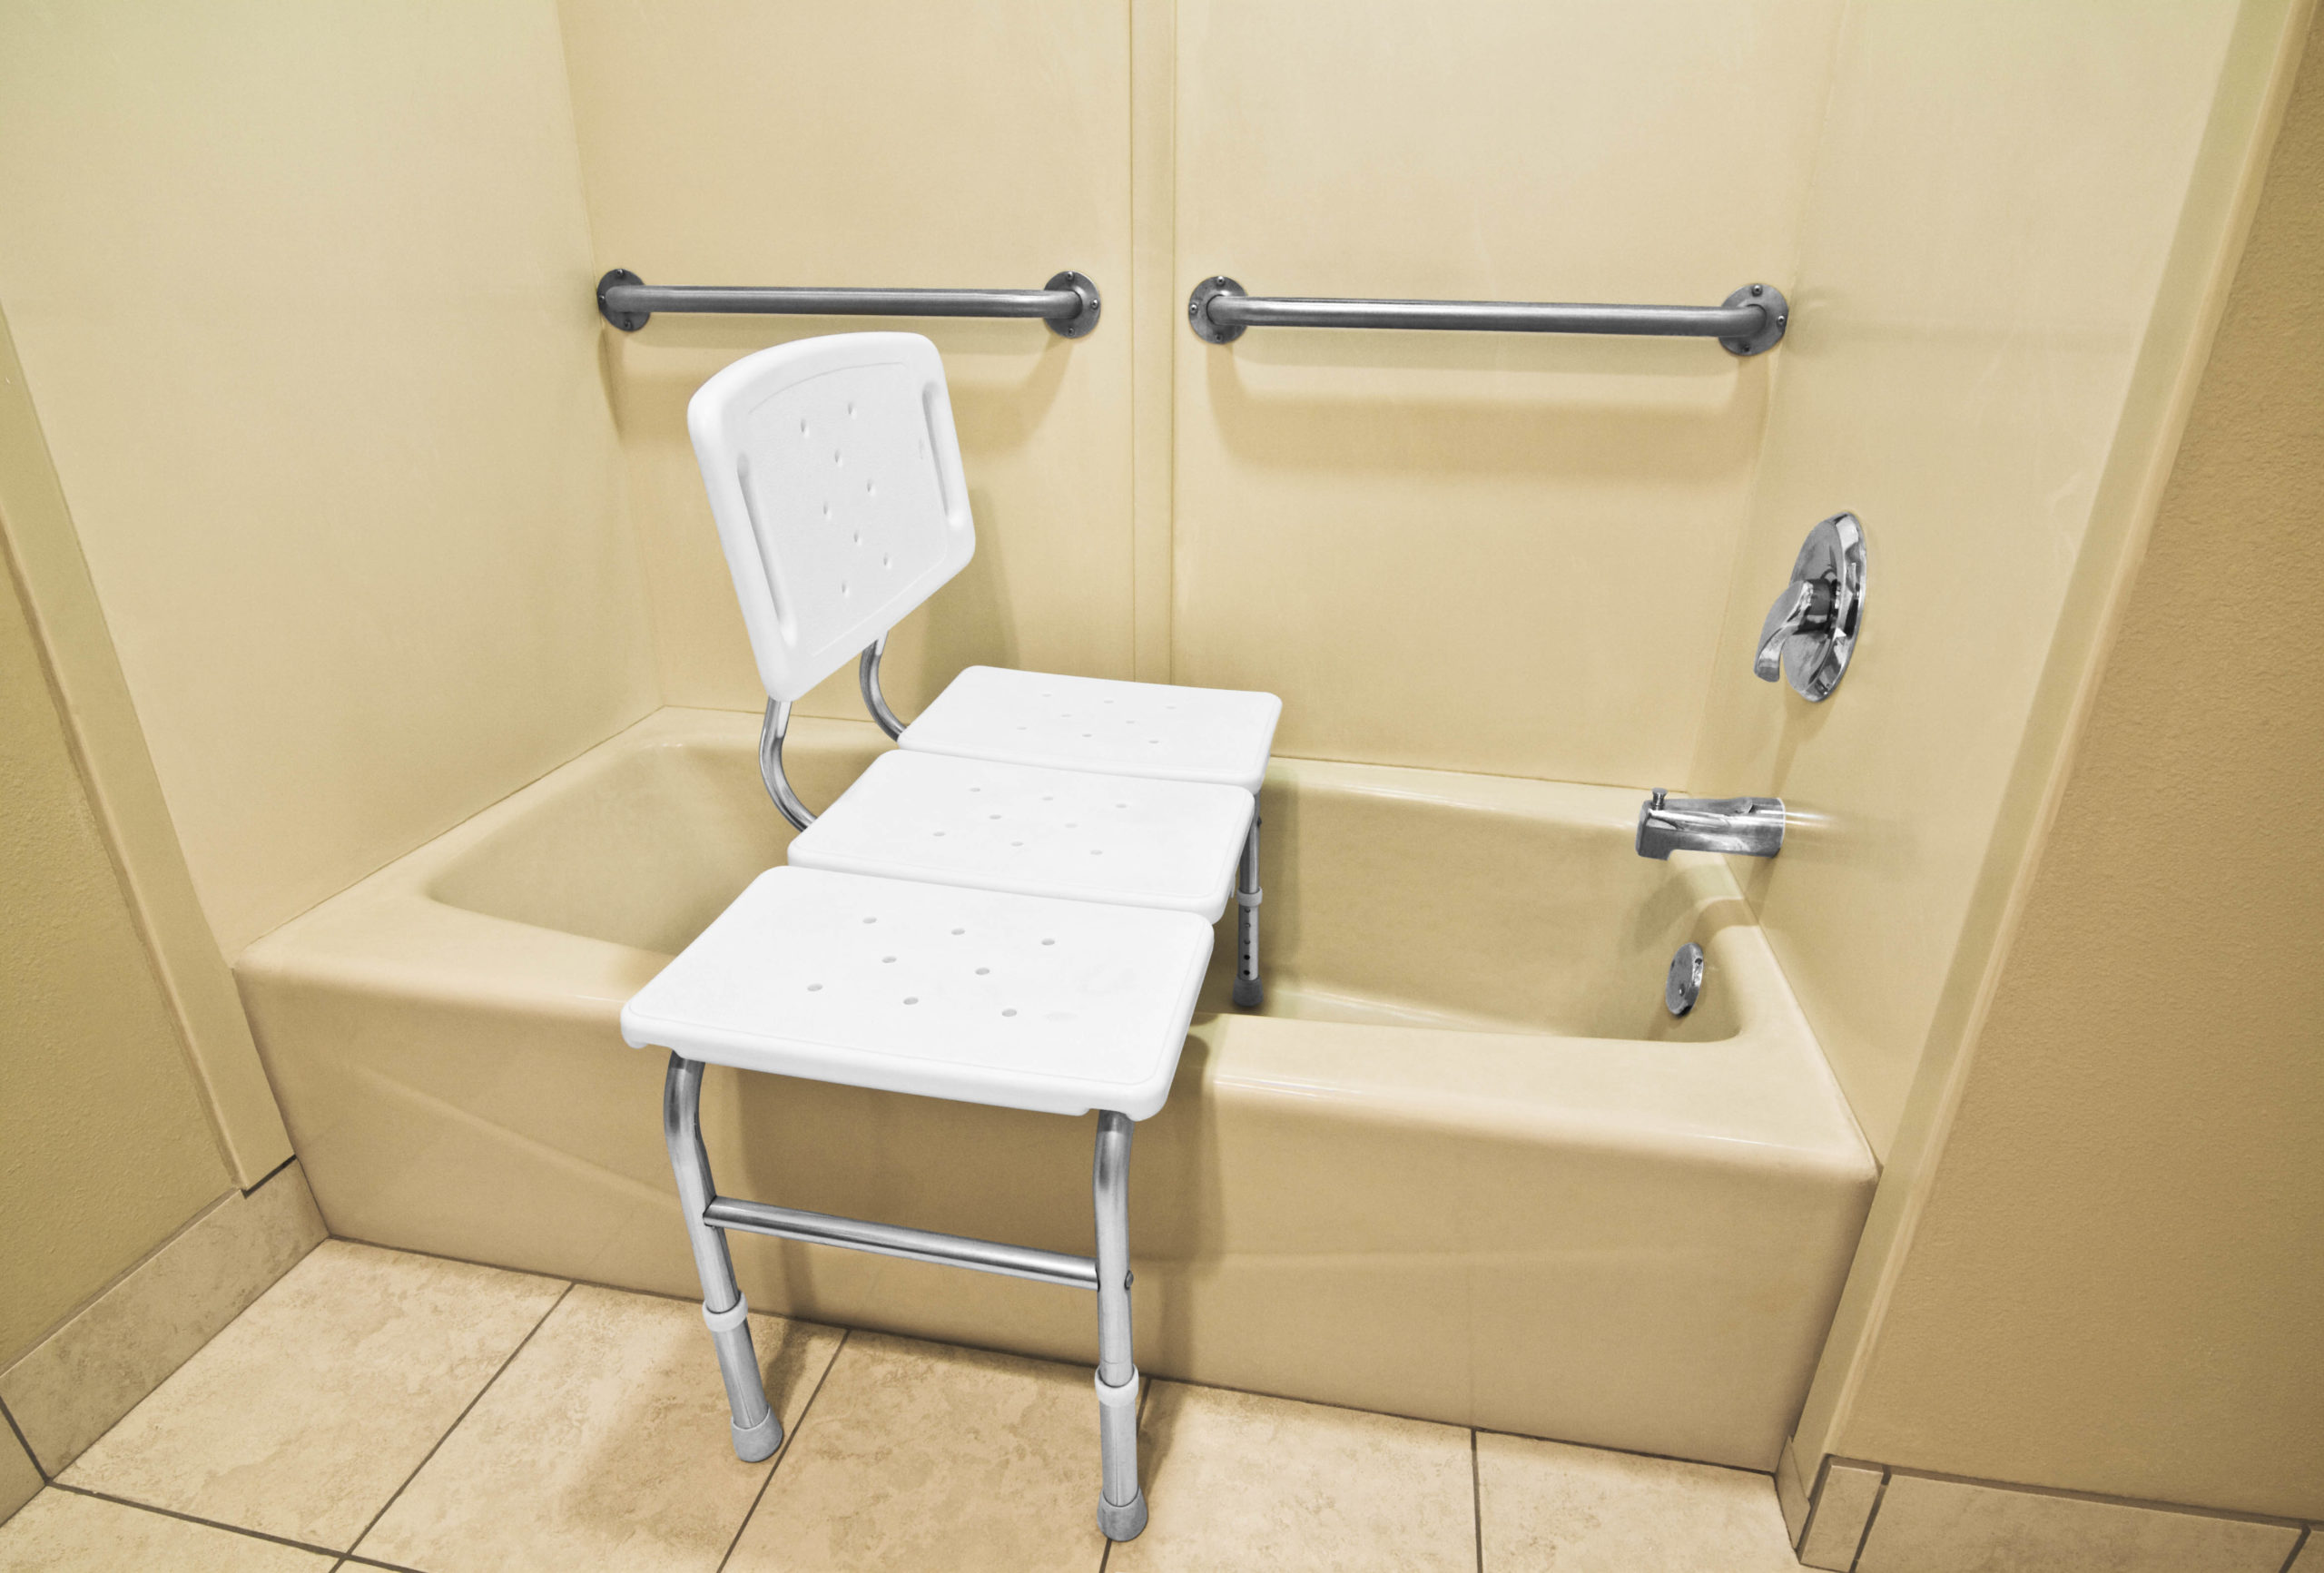 Вы сейчас просматриваете 7 приспособлений для ванны для людей с ограниченными возможностями